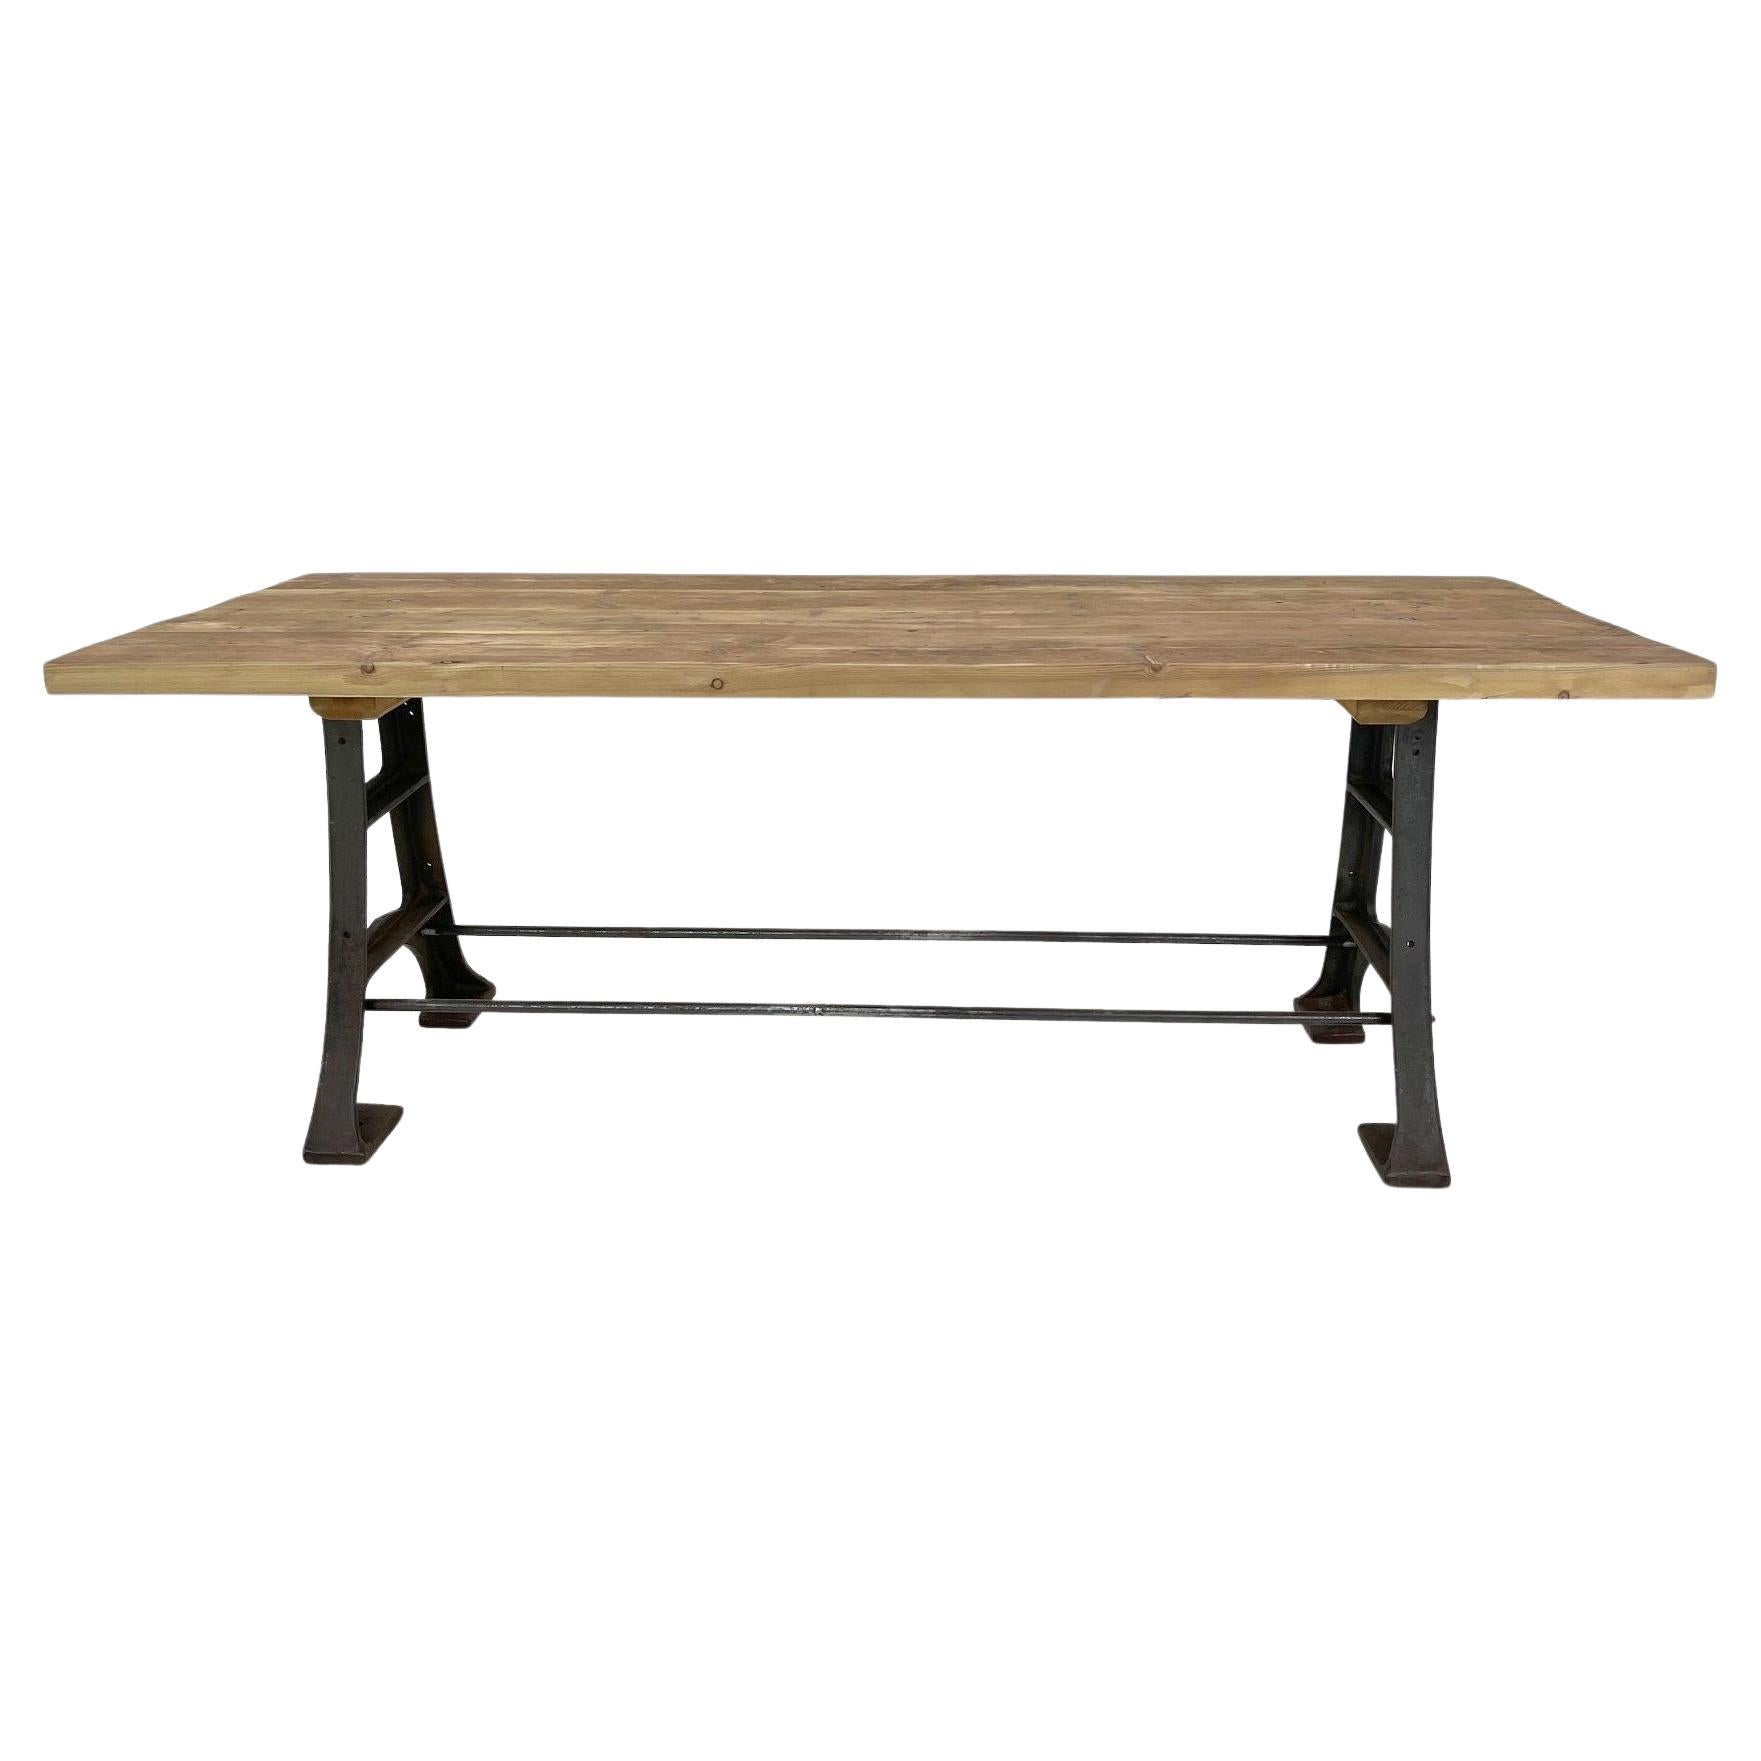 Wood & Steel Industrial Table